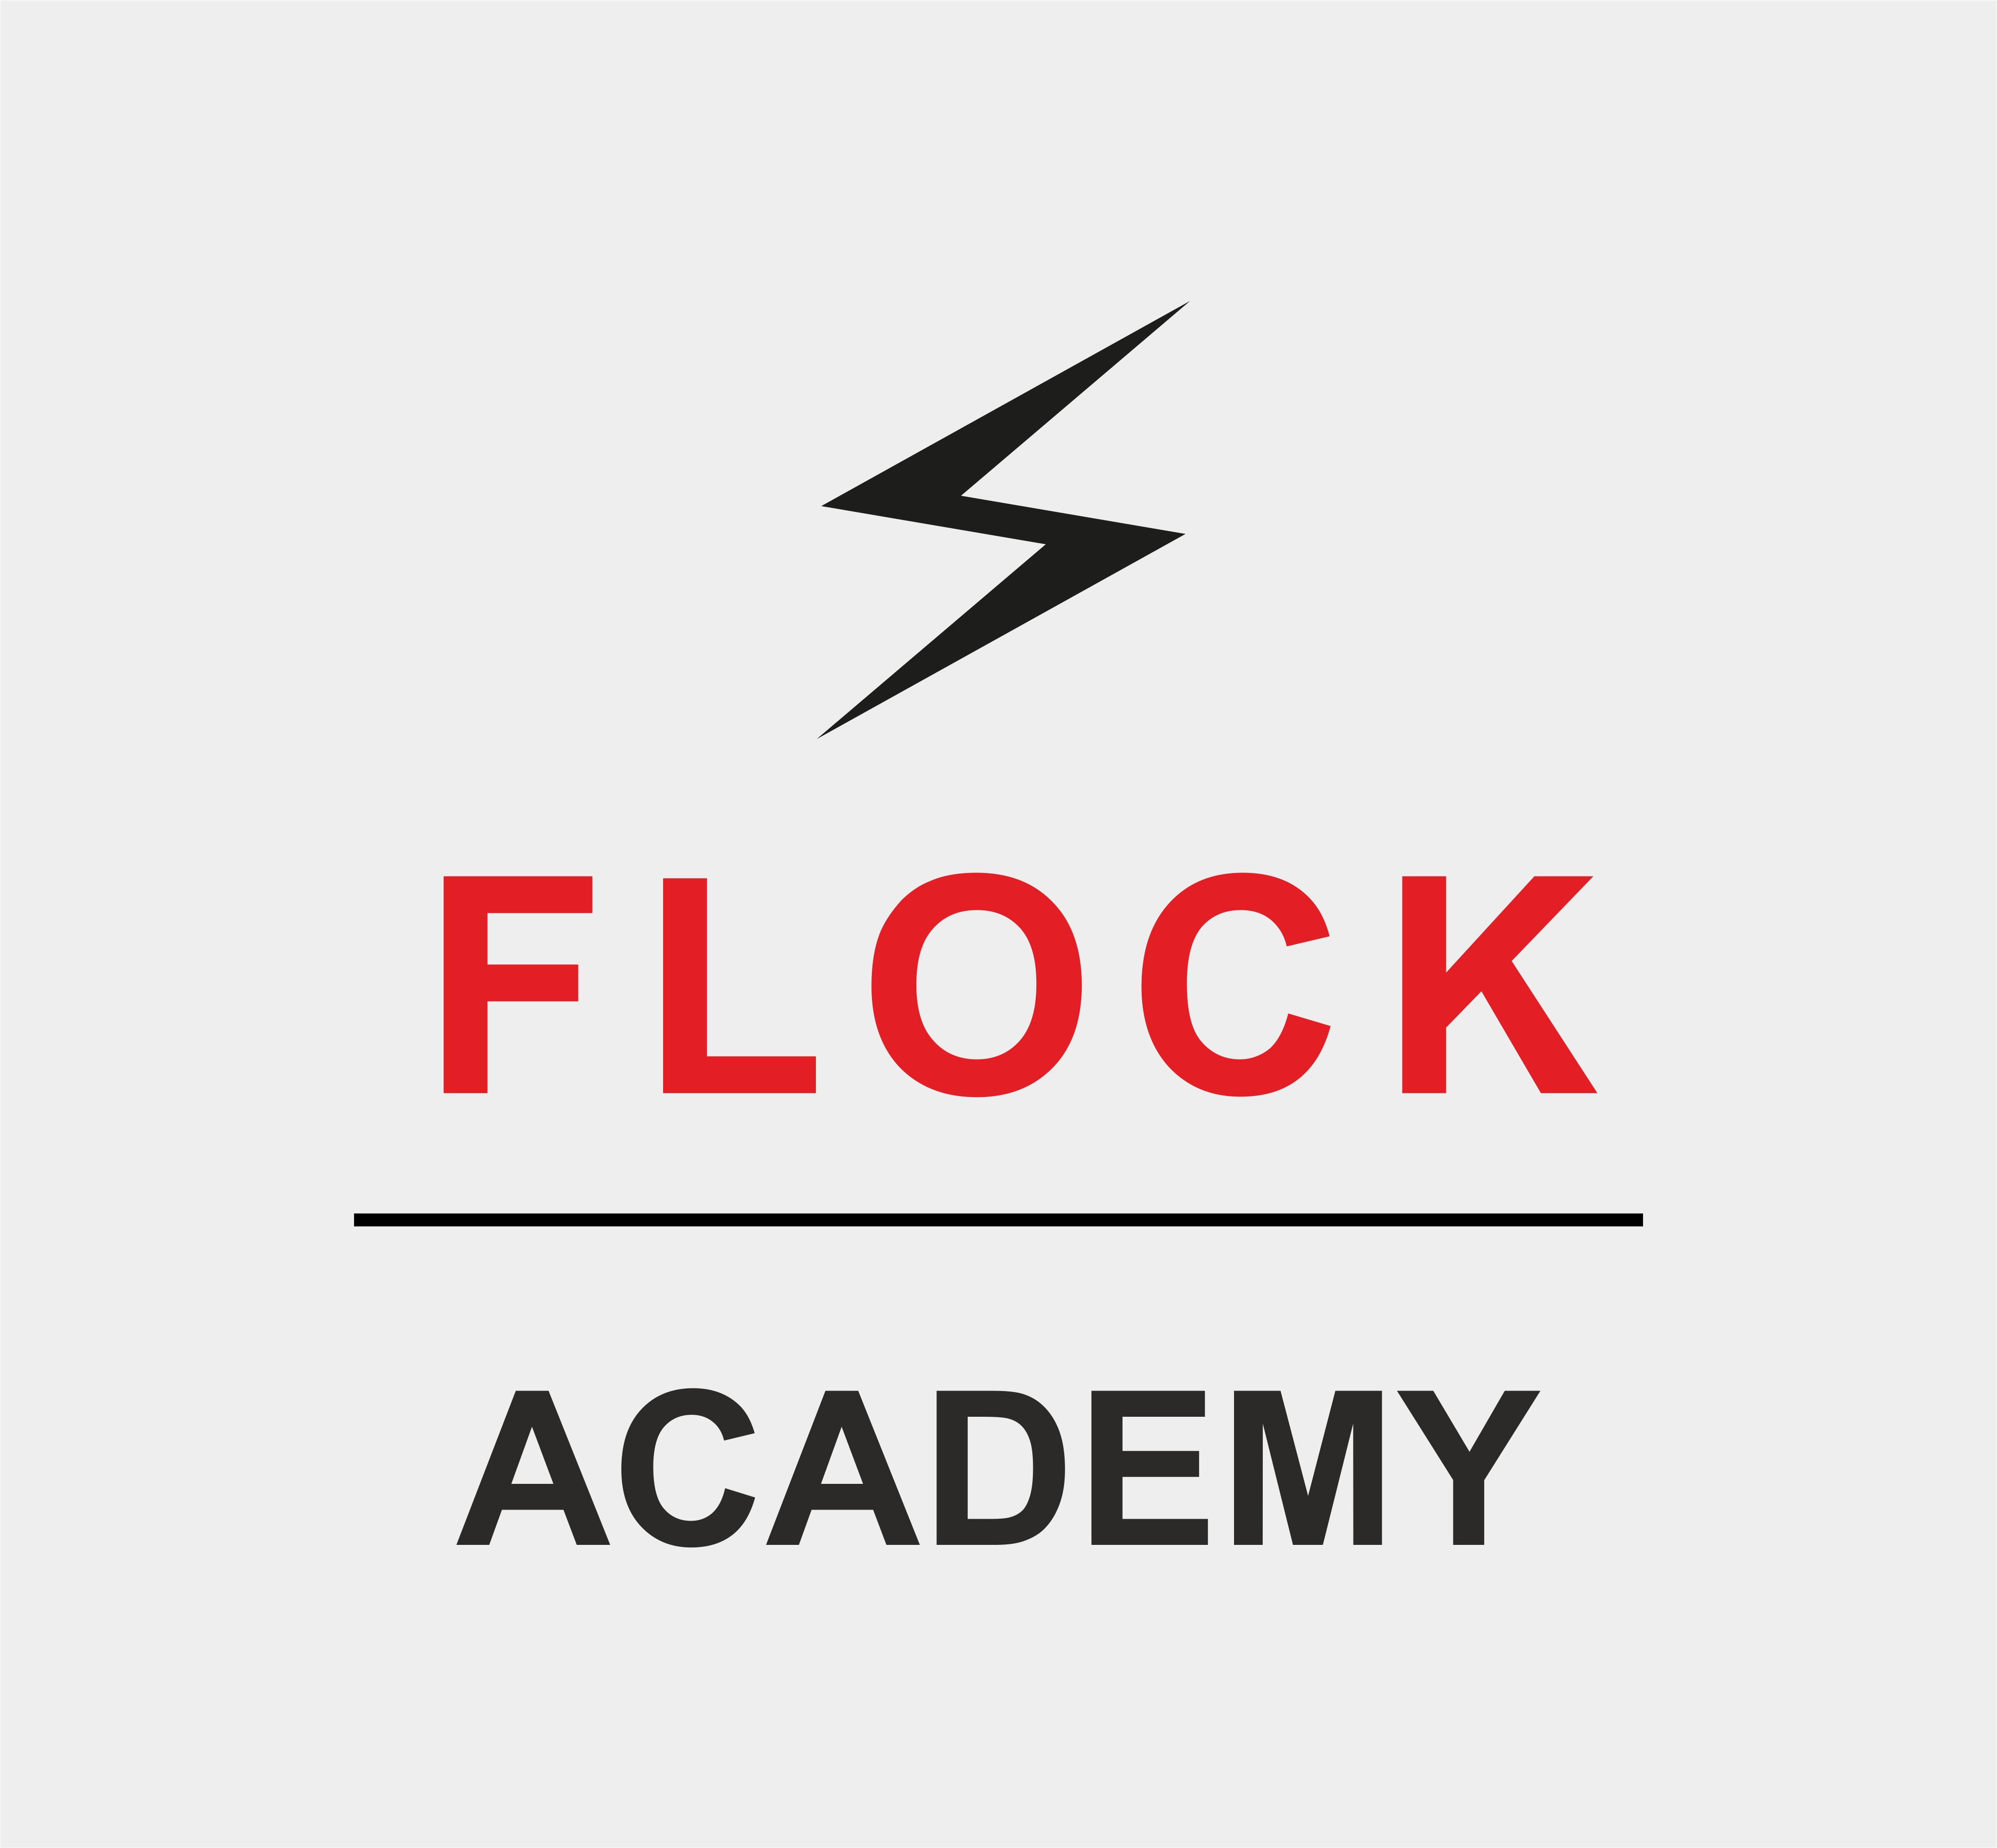 Auf diesem Bild ist das Logo der FLOCK-Academy zu sehen.